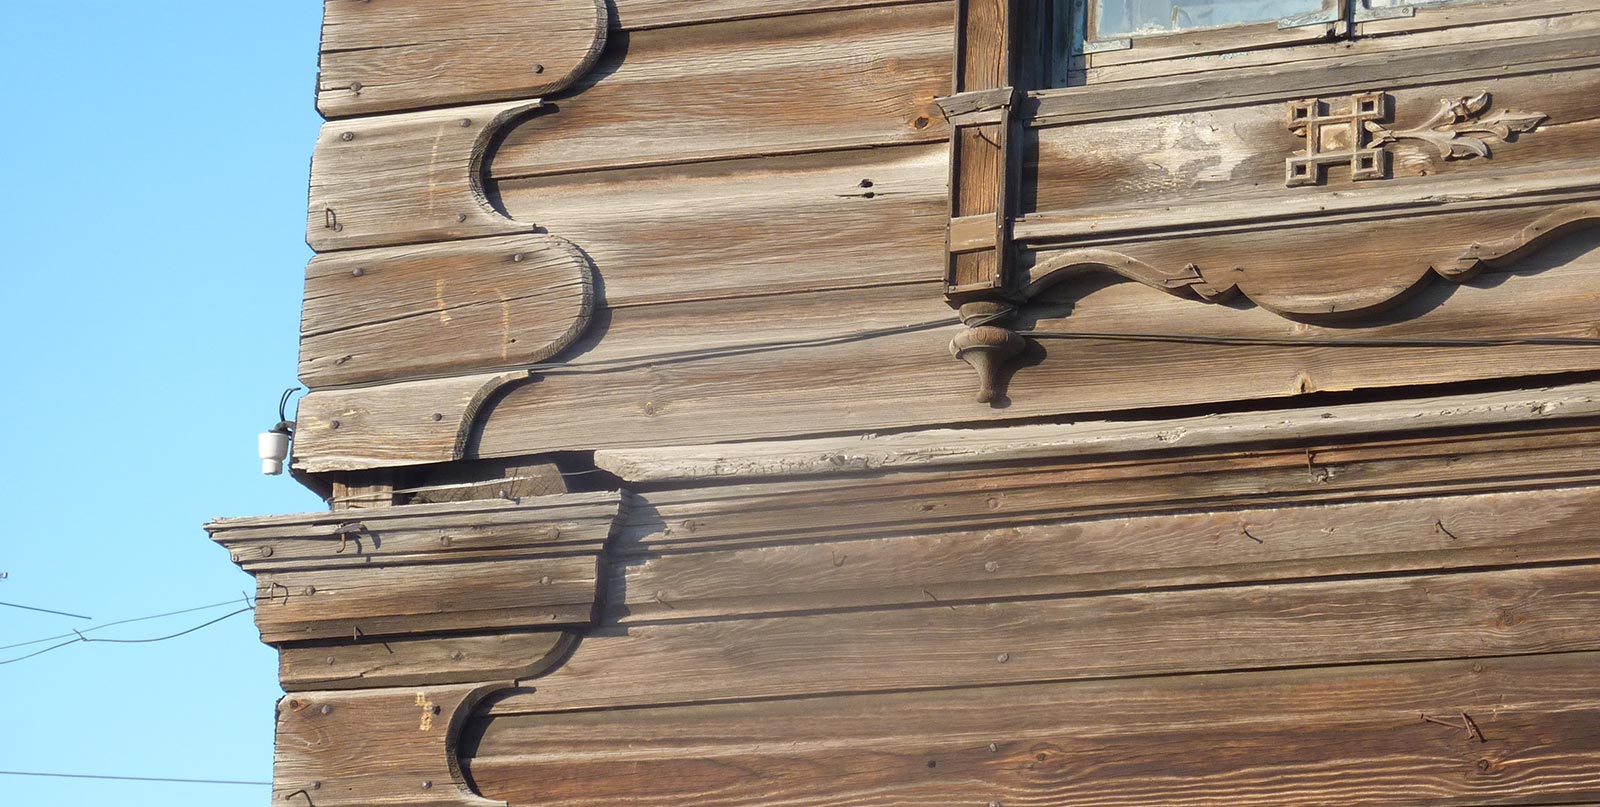 Rustic wooden corners